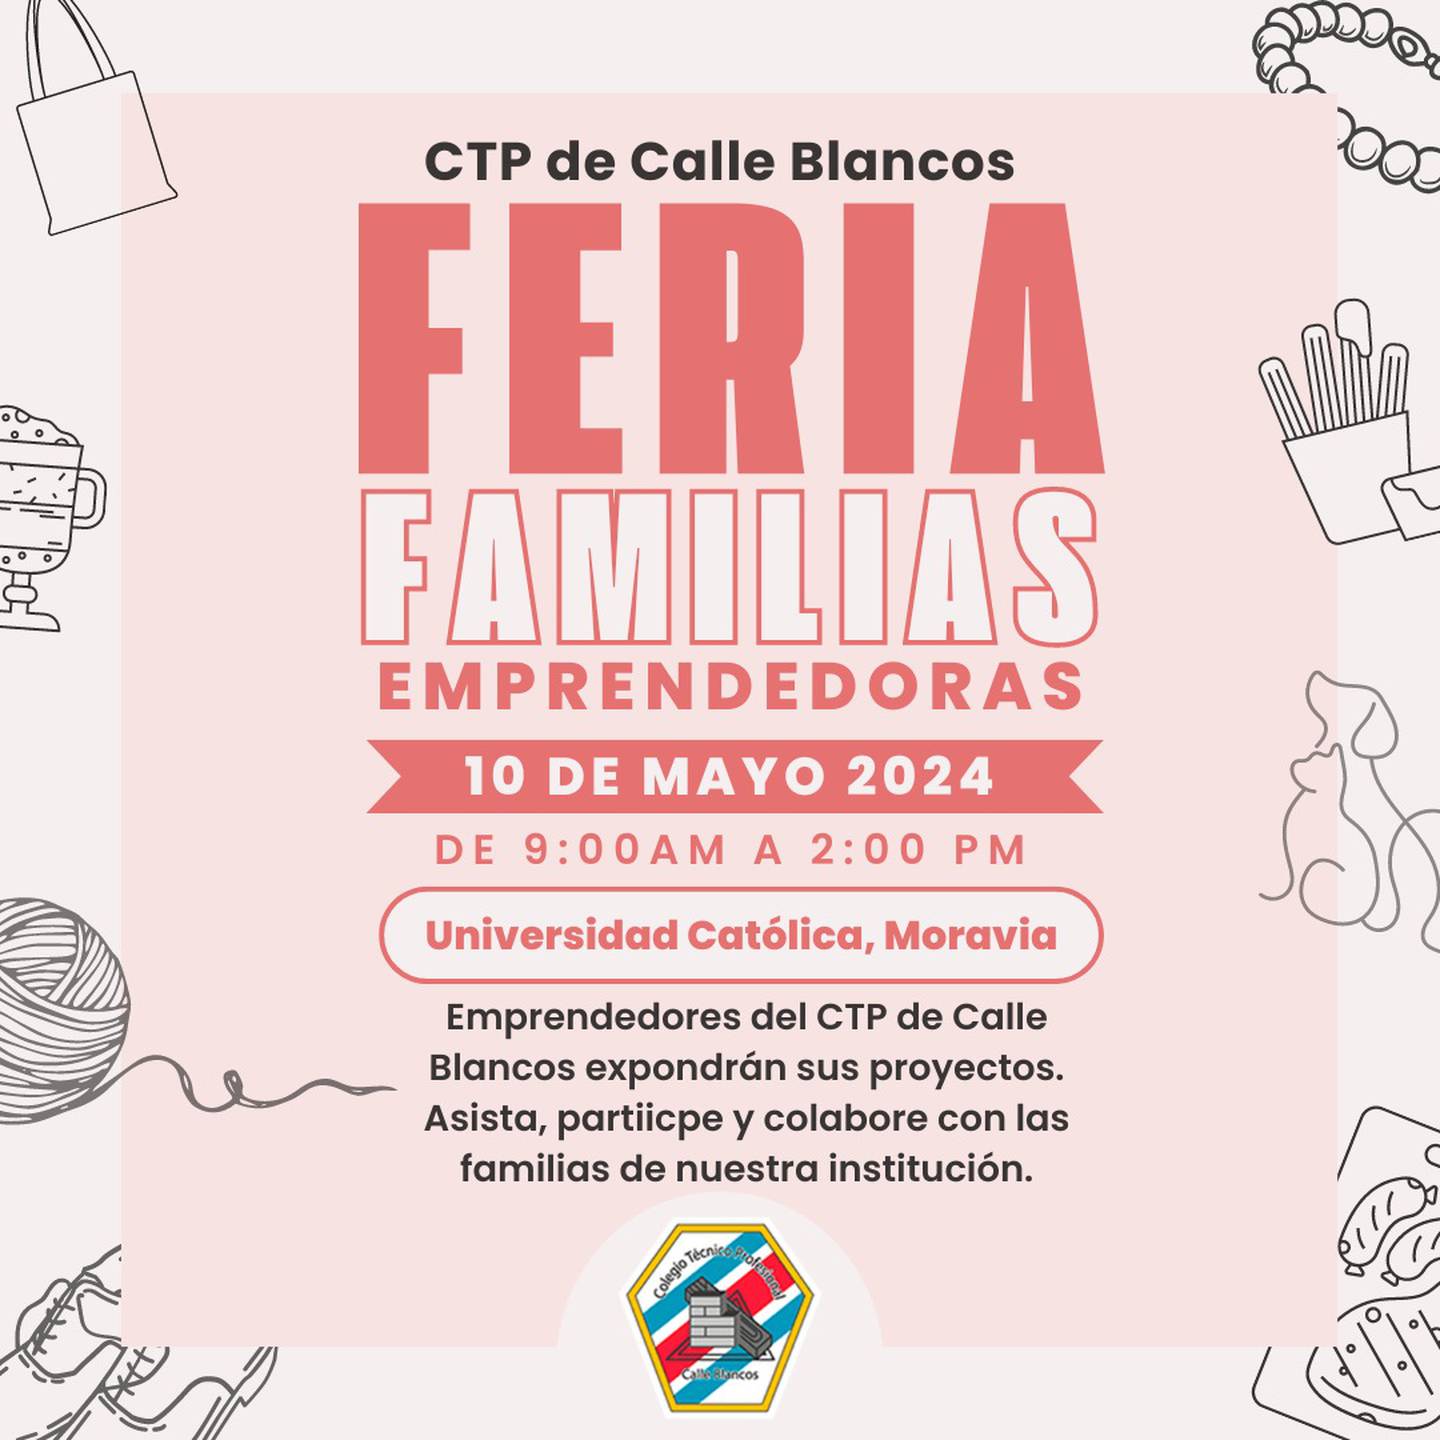 Feria de emprendedores en el CTP Calle Blancos